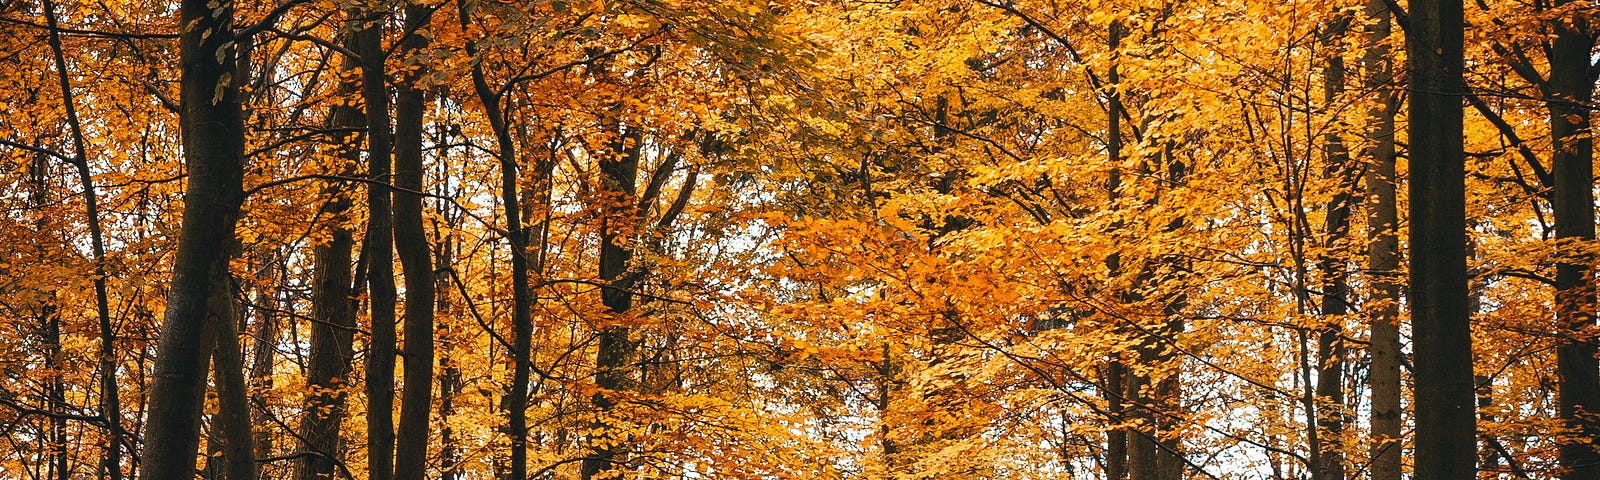 Figure walking through autumn trees